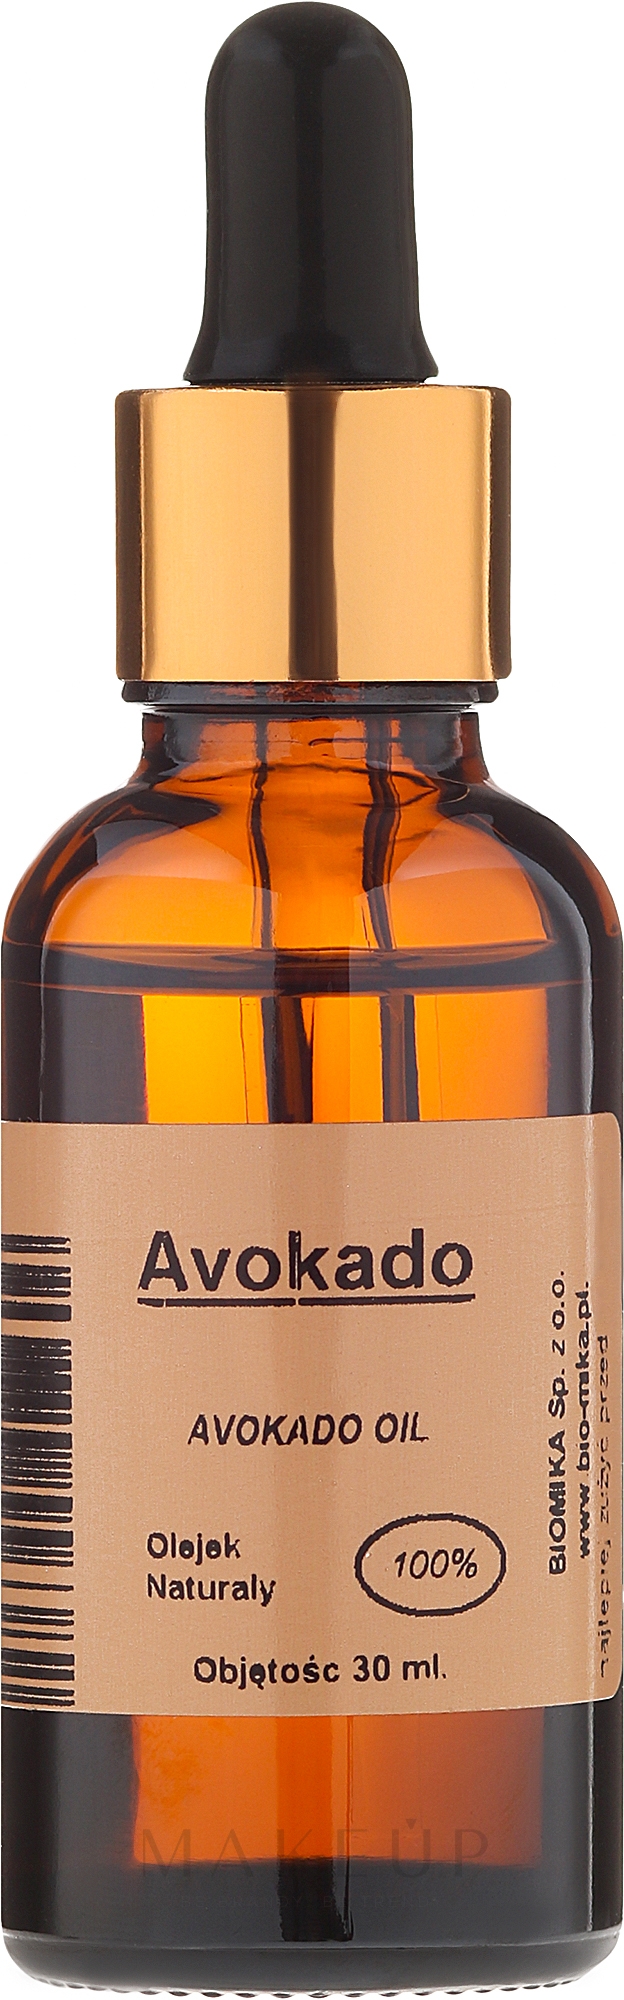 100% natürliches Avocadoöl - Biomika Avokado Oil — Bild 30 ml